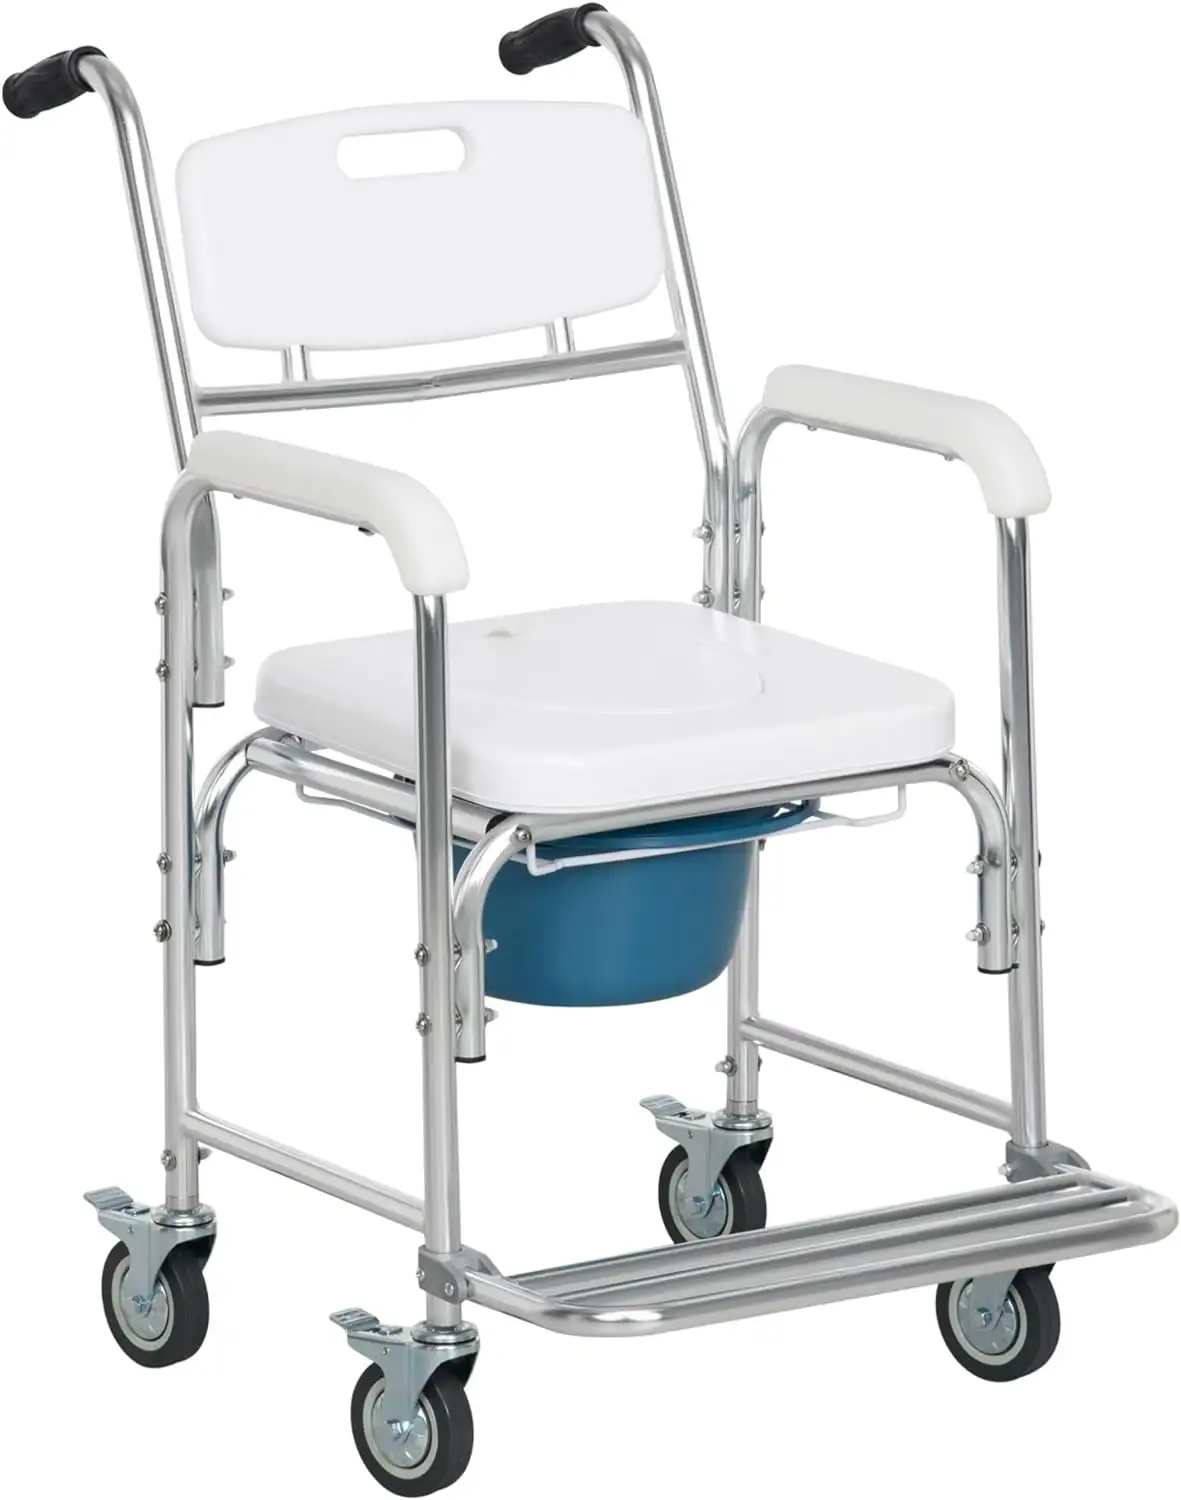 Sedia a rotelle per comò doccia 3 in 1, trasporto accanto alla sedia comoda, toilette impermeabile arrotolabile